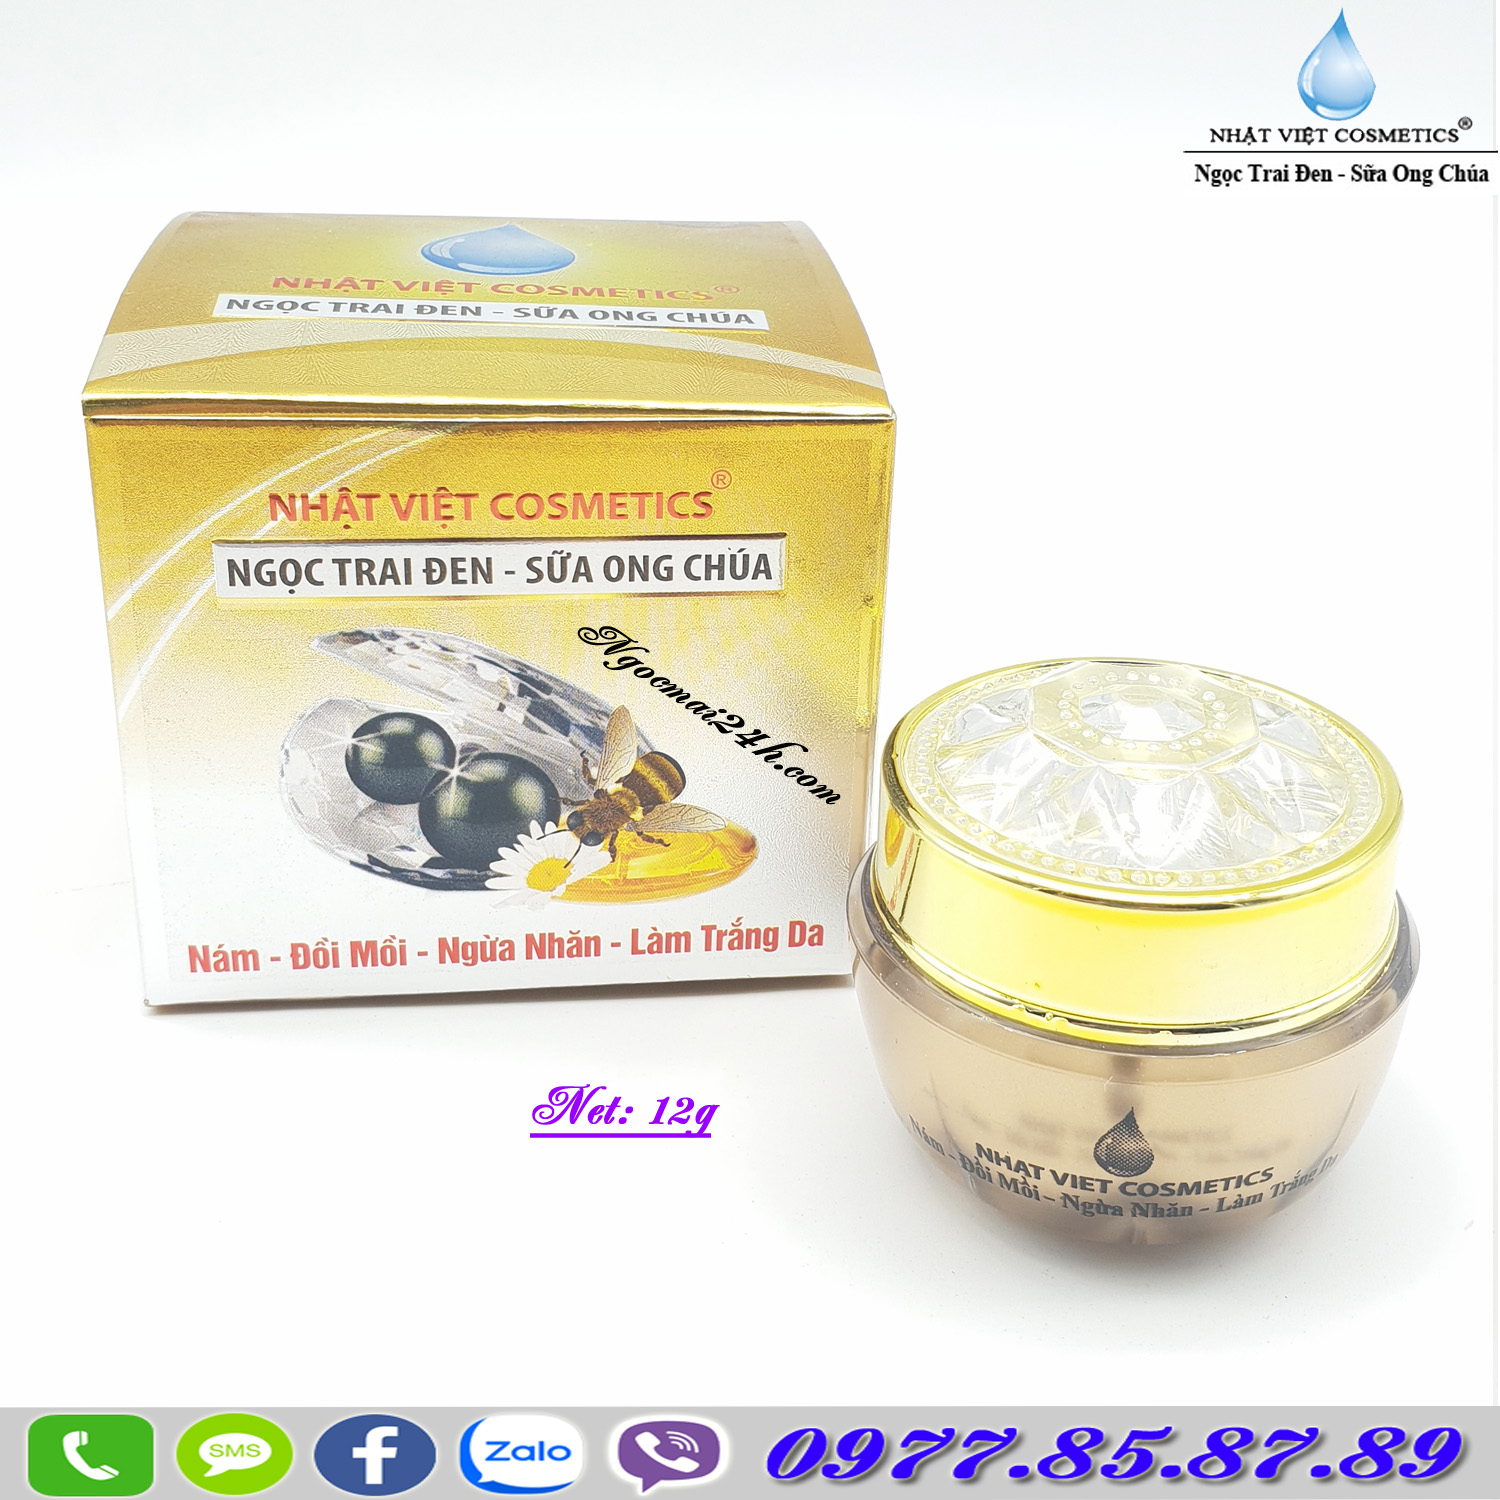 Kem trị nám - Đồi mồi - Ngừa nhăn - Làm trắng da dưỡng chất Ngọc Trai Đen - Sữa Ong Chúa V-5 Nhật Việt Cosmetics (12g)